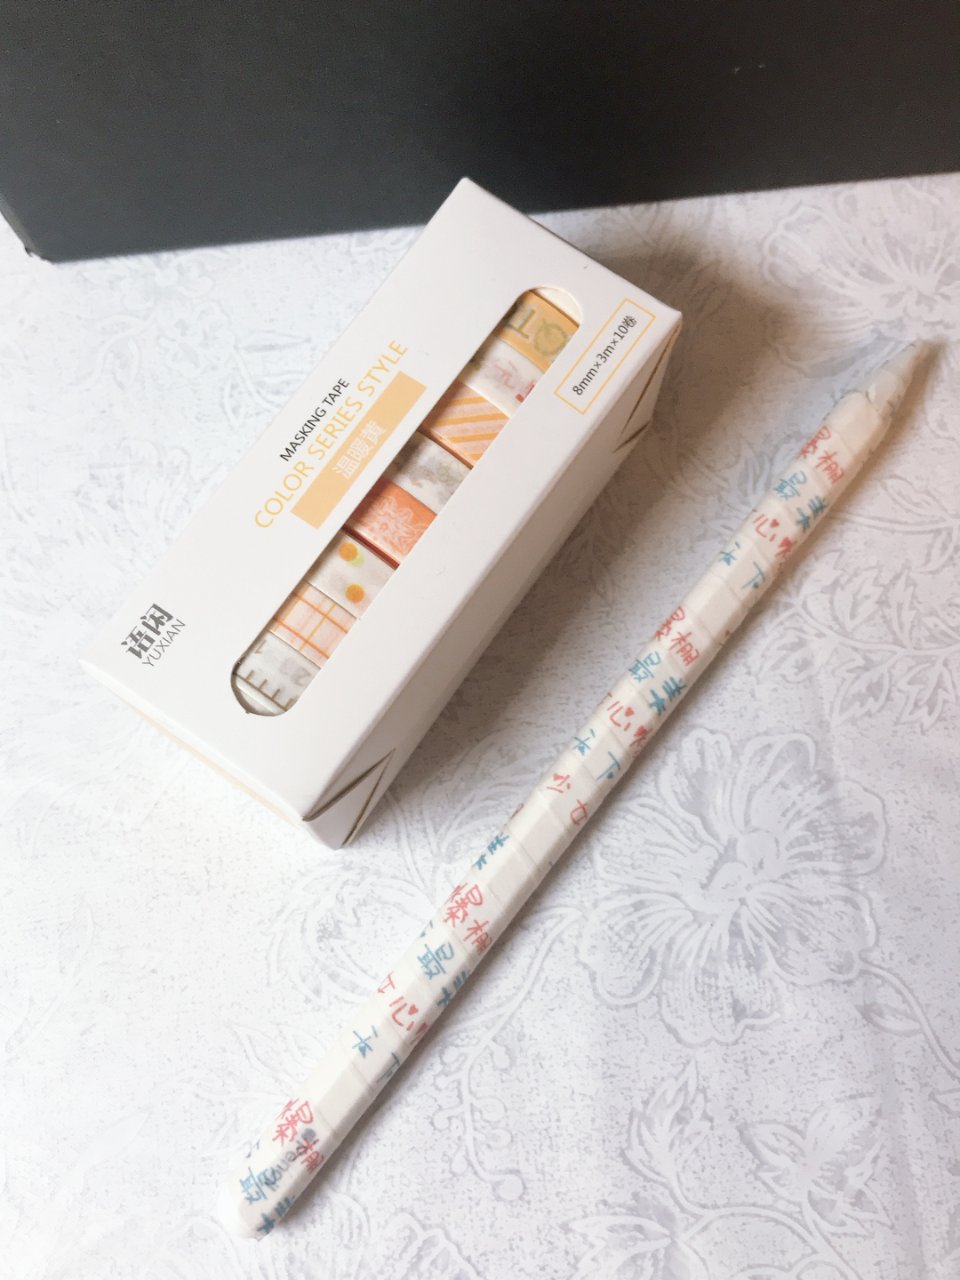 Apple Pencil 2,Apple Pencil套